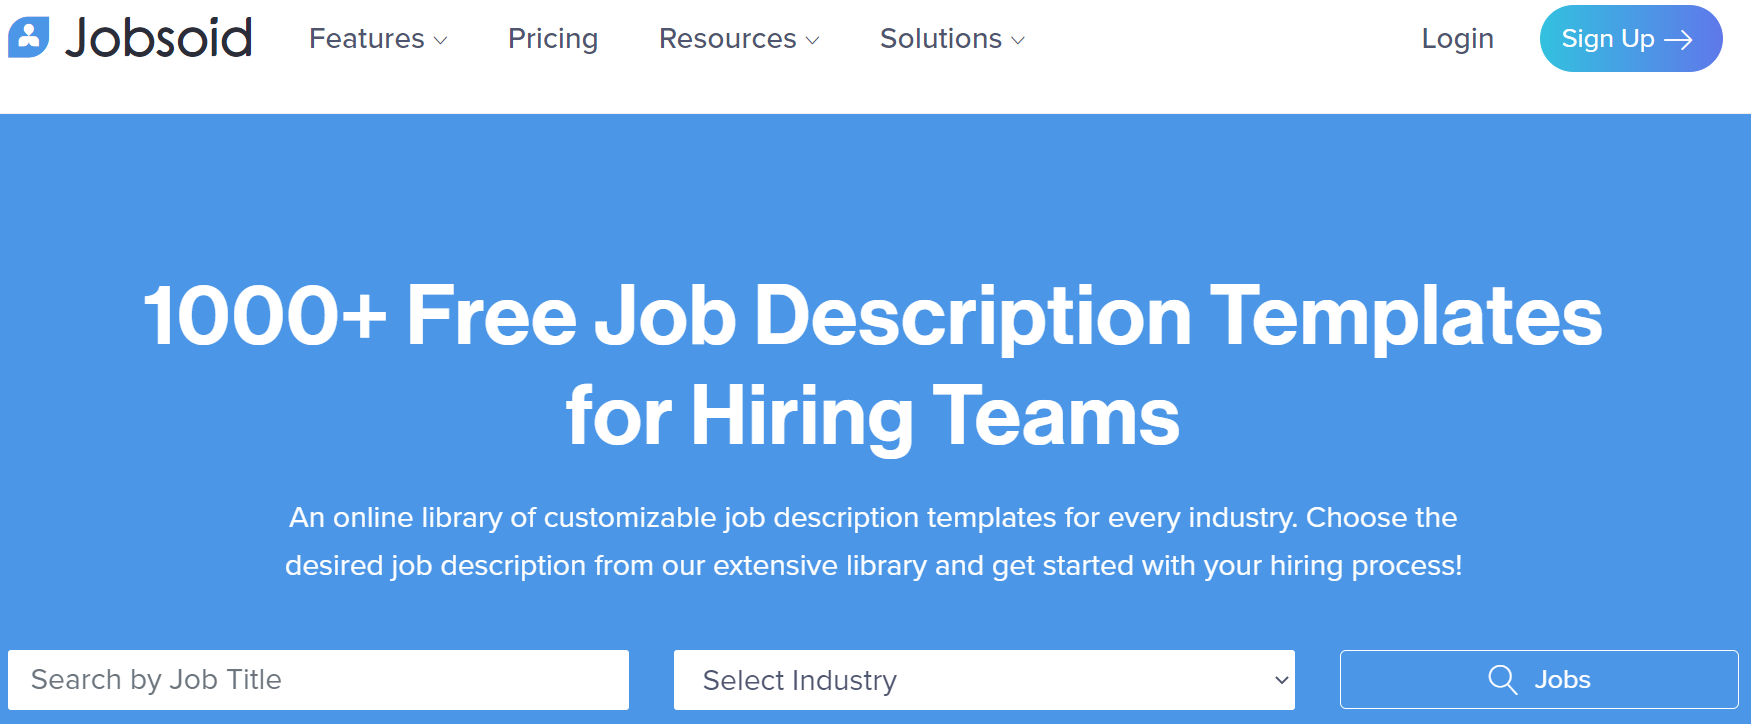 jobsoid job description templates